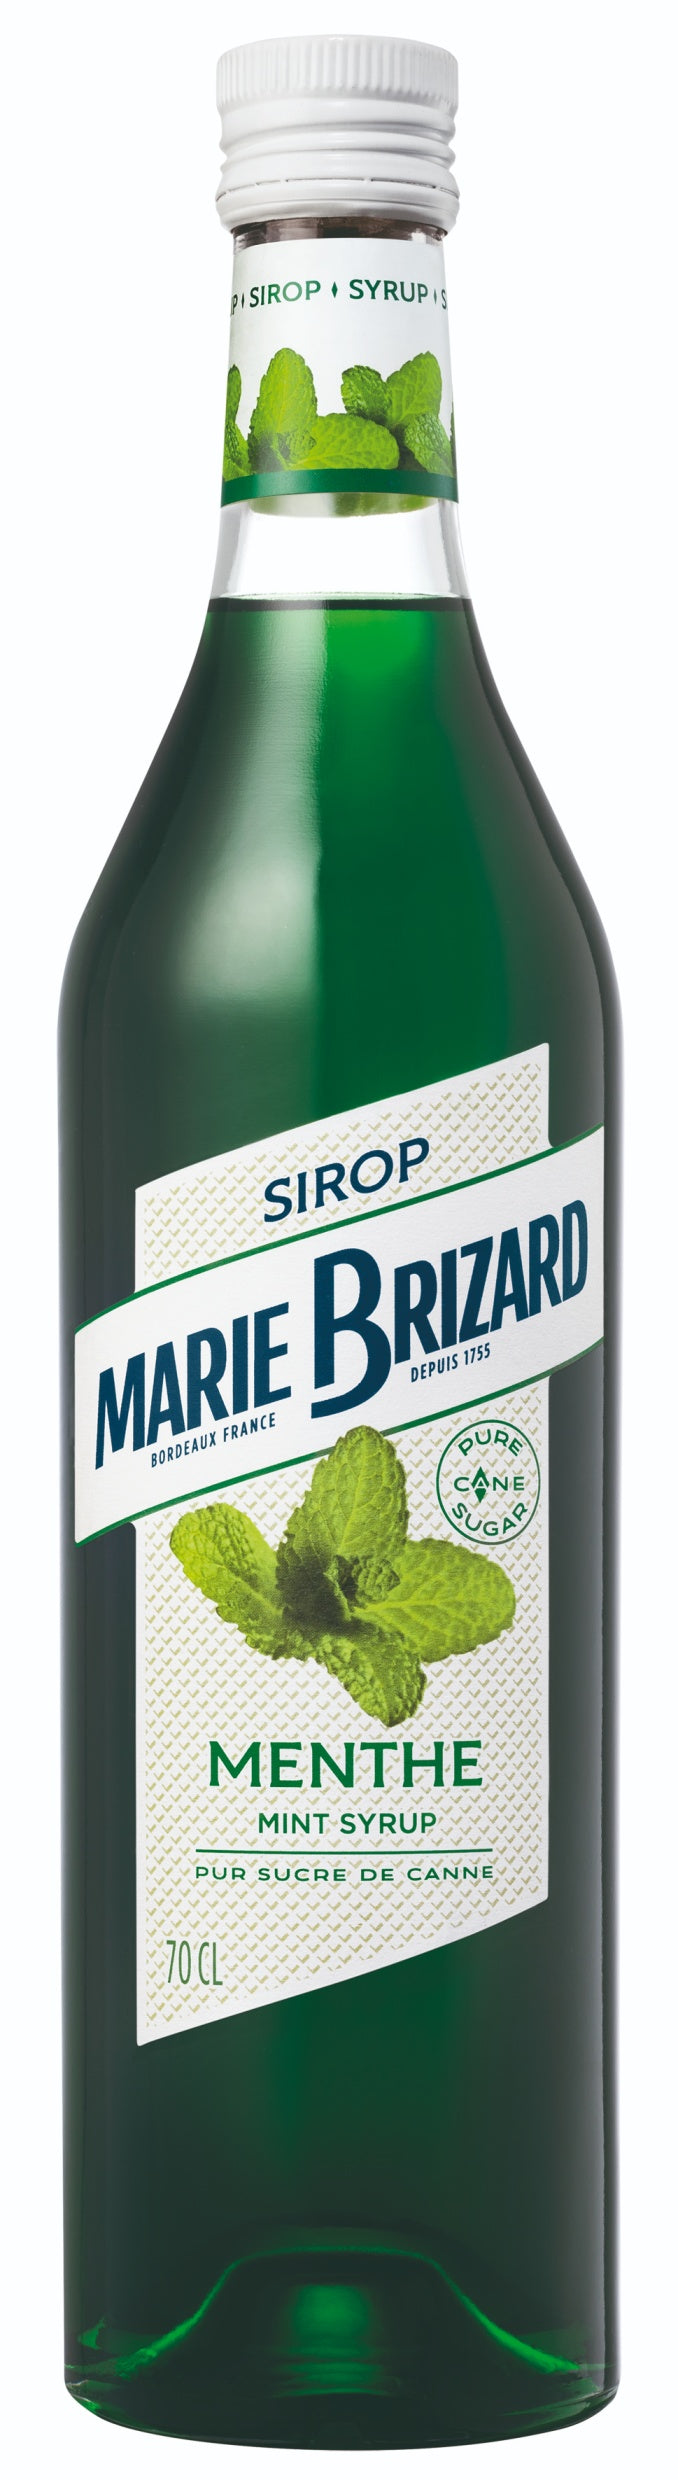 MARIE BRIZARD SIROP DE MENTHE 70CL